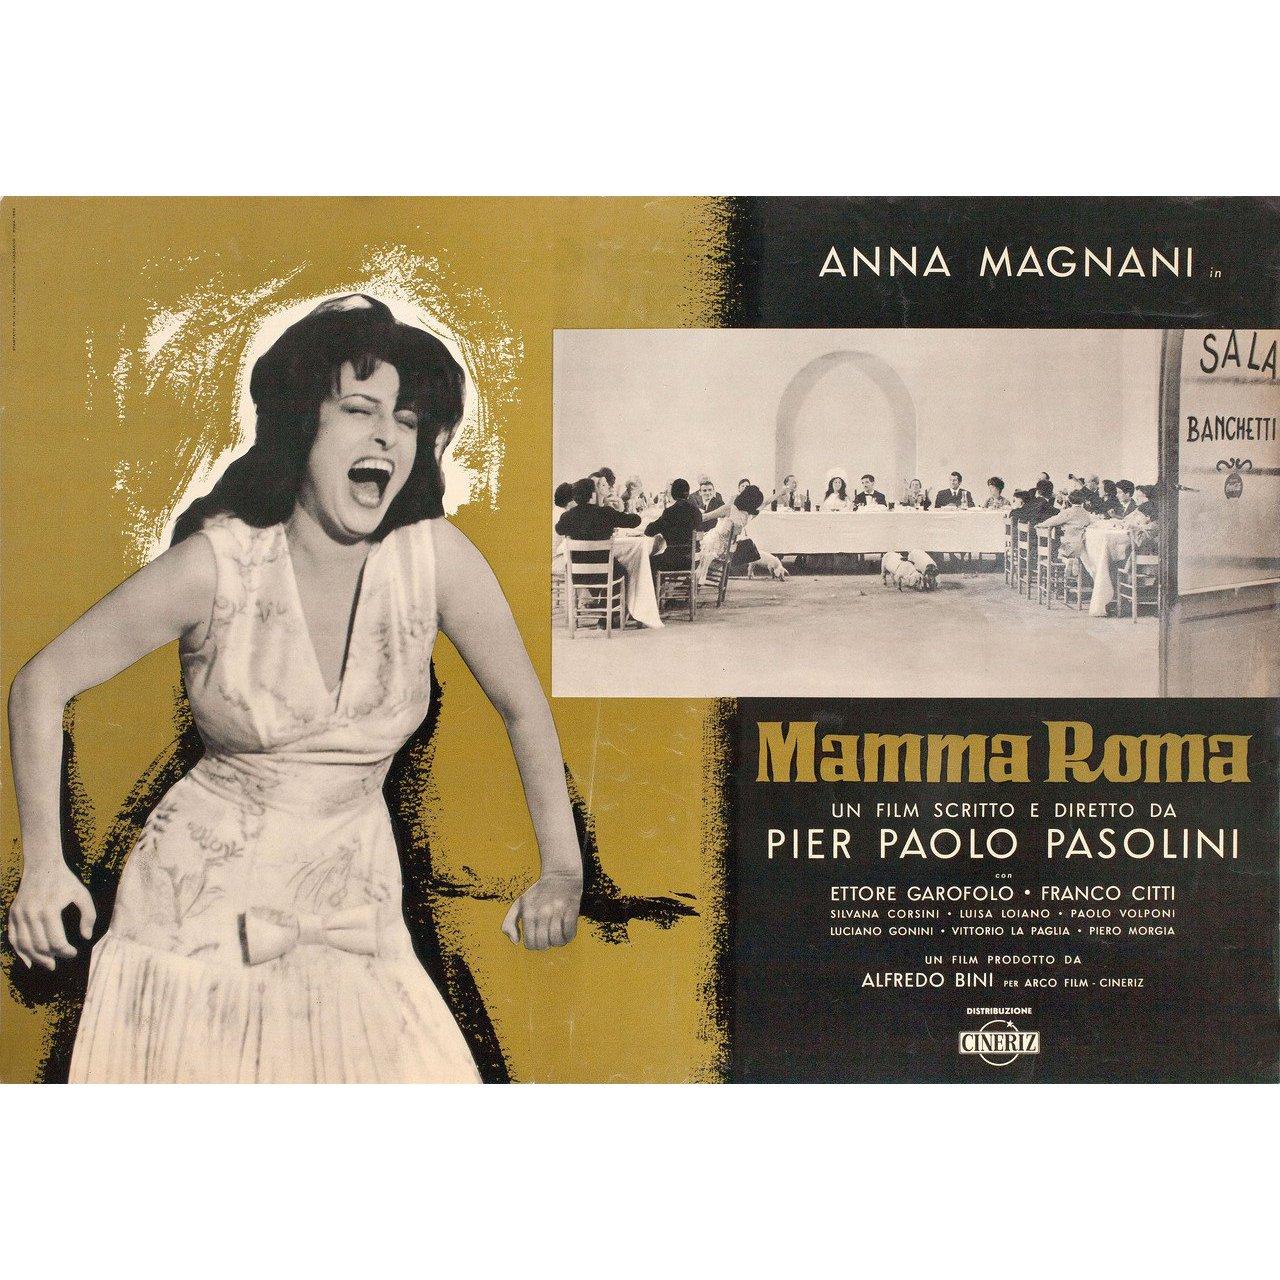 Affiche originale de 1962 pour le film Mamma Roma réalisé par Pier Paolo Pasolini avec Anna Magnani / Ettore Garofolo / Franco Citti / Silvana Corsini. Très bon état, roulé. Veuillez noter que la taille est indiquée en pouces et que la taille réelle